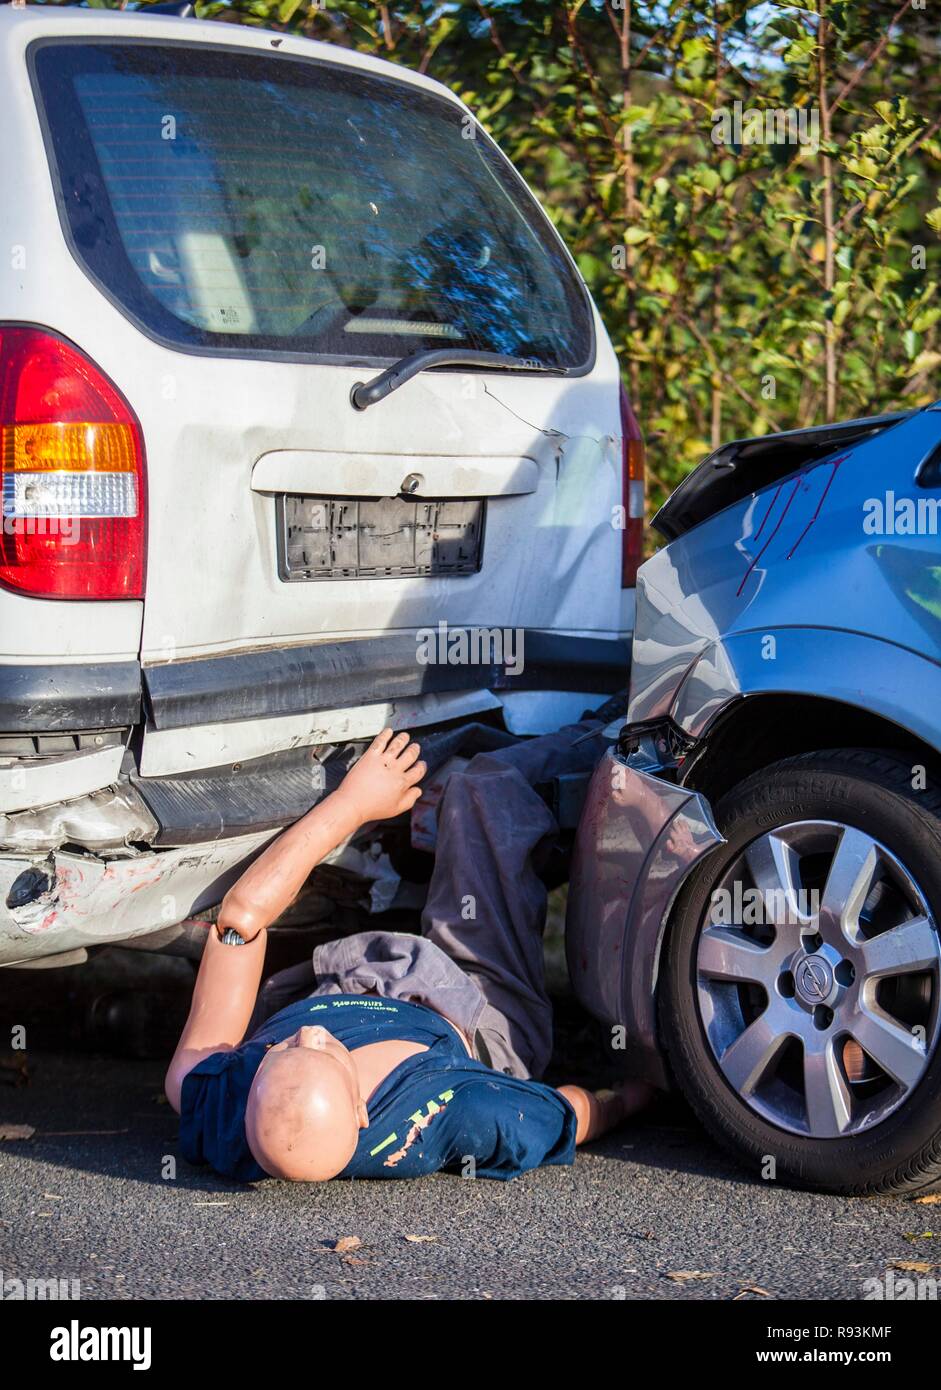 Dummy, Schaufensterpuppe, die für einen Körper, zwischen kollidierenden Fahrzeugen eingekeilt ist, Notfallübung mit zahlreichen Rettungsorganisationen Stockfoto